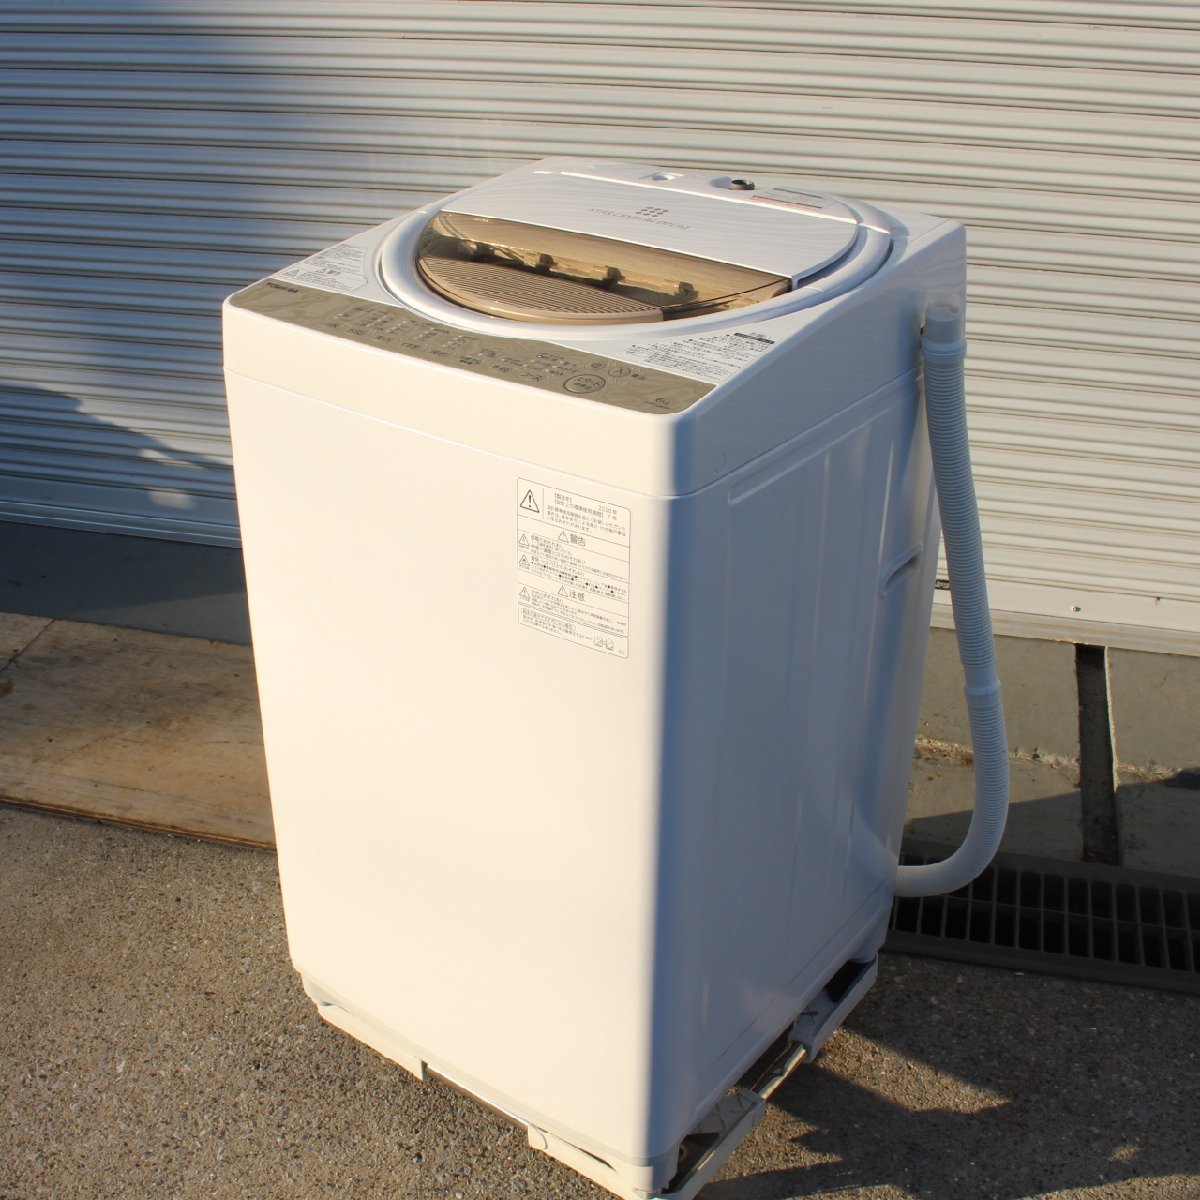 東京都新宿区にて 東芝 全自動洗濯機 AW-6G8 2020年製 を出張買取させて頂きました。